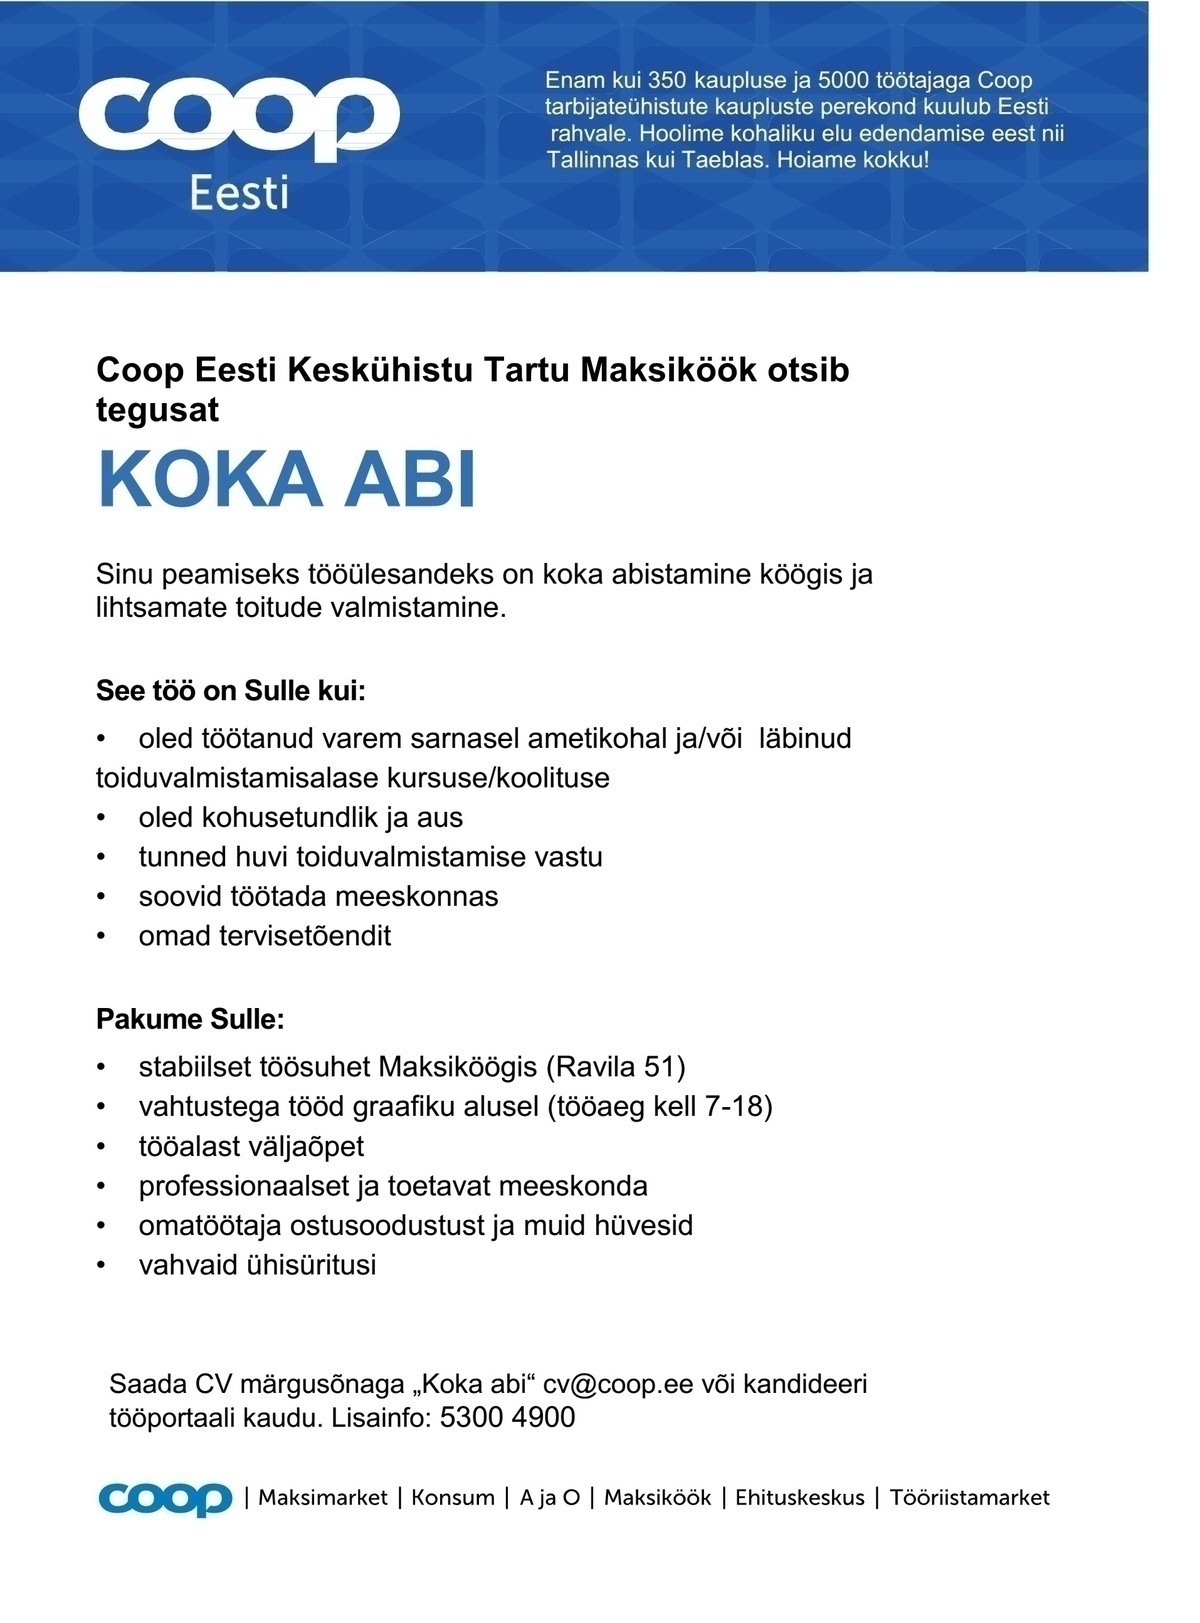 Coop Eesti Keskühistu Koka abi (Maksiköök)